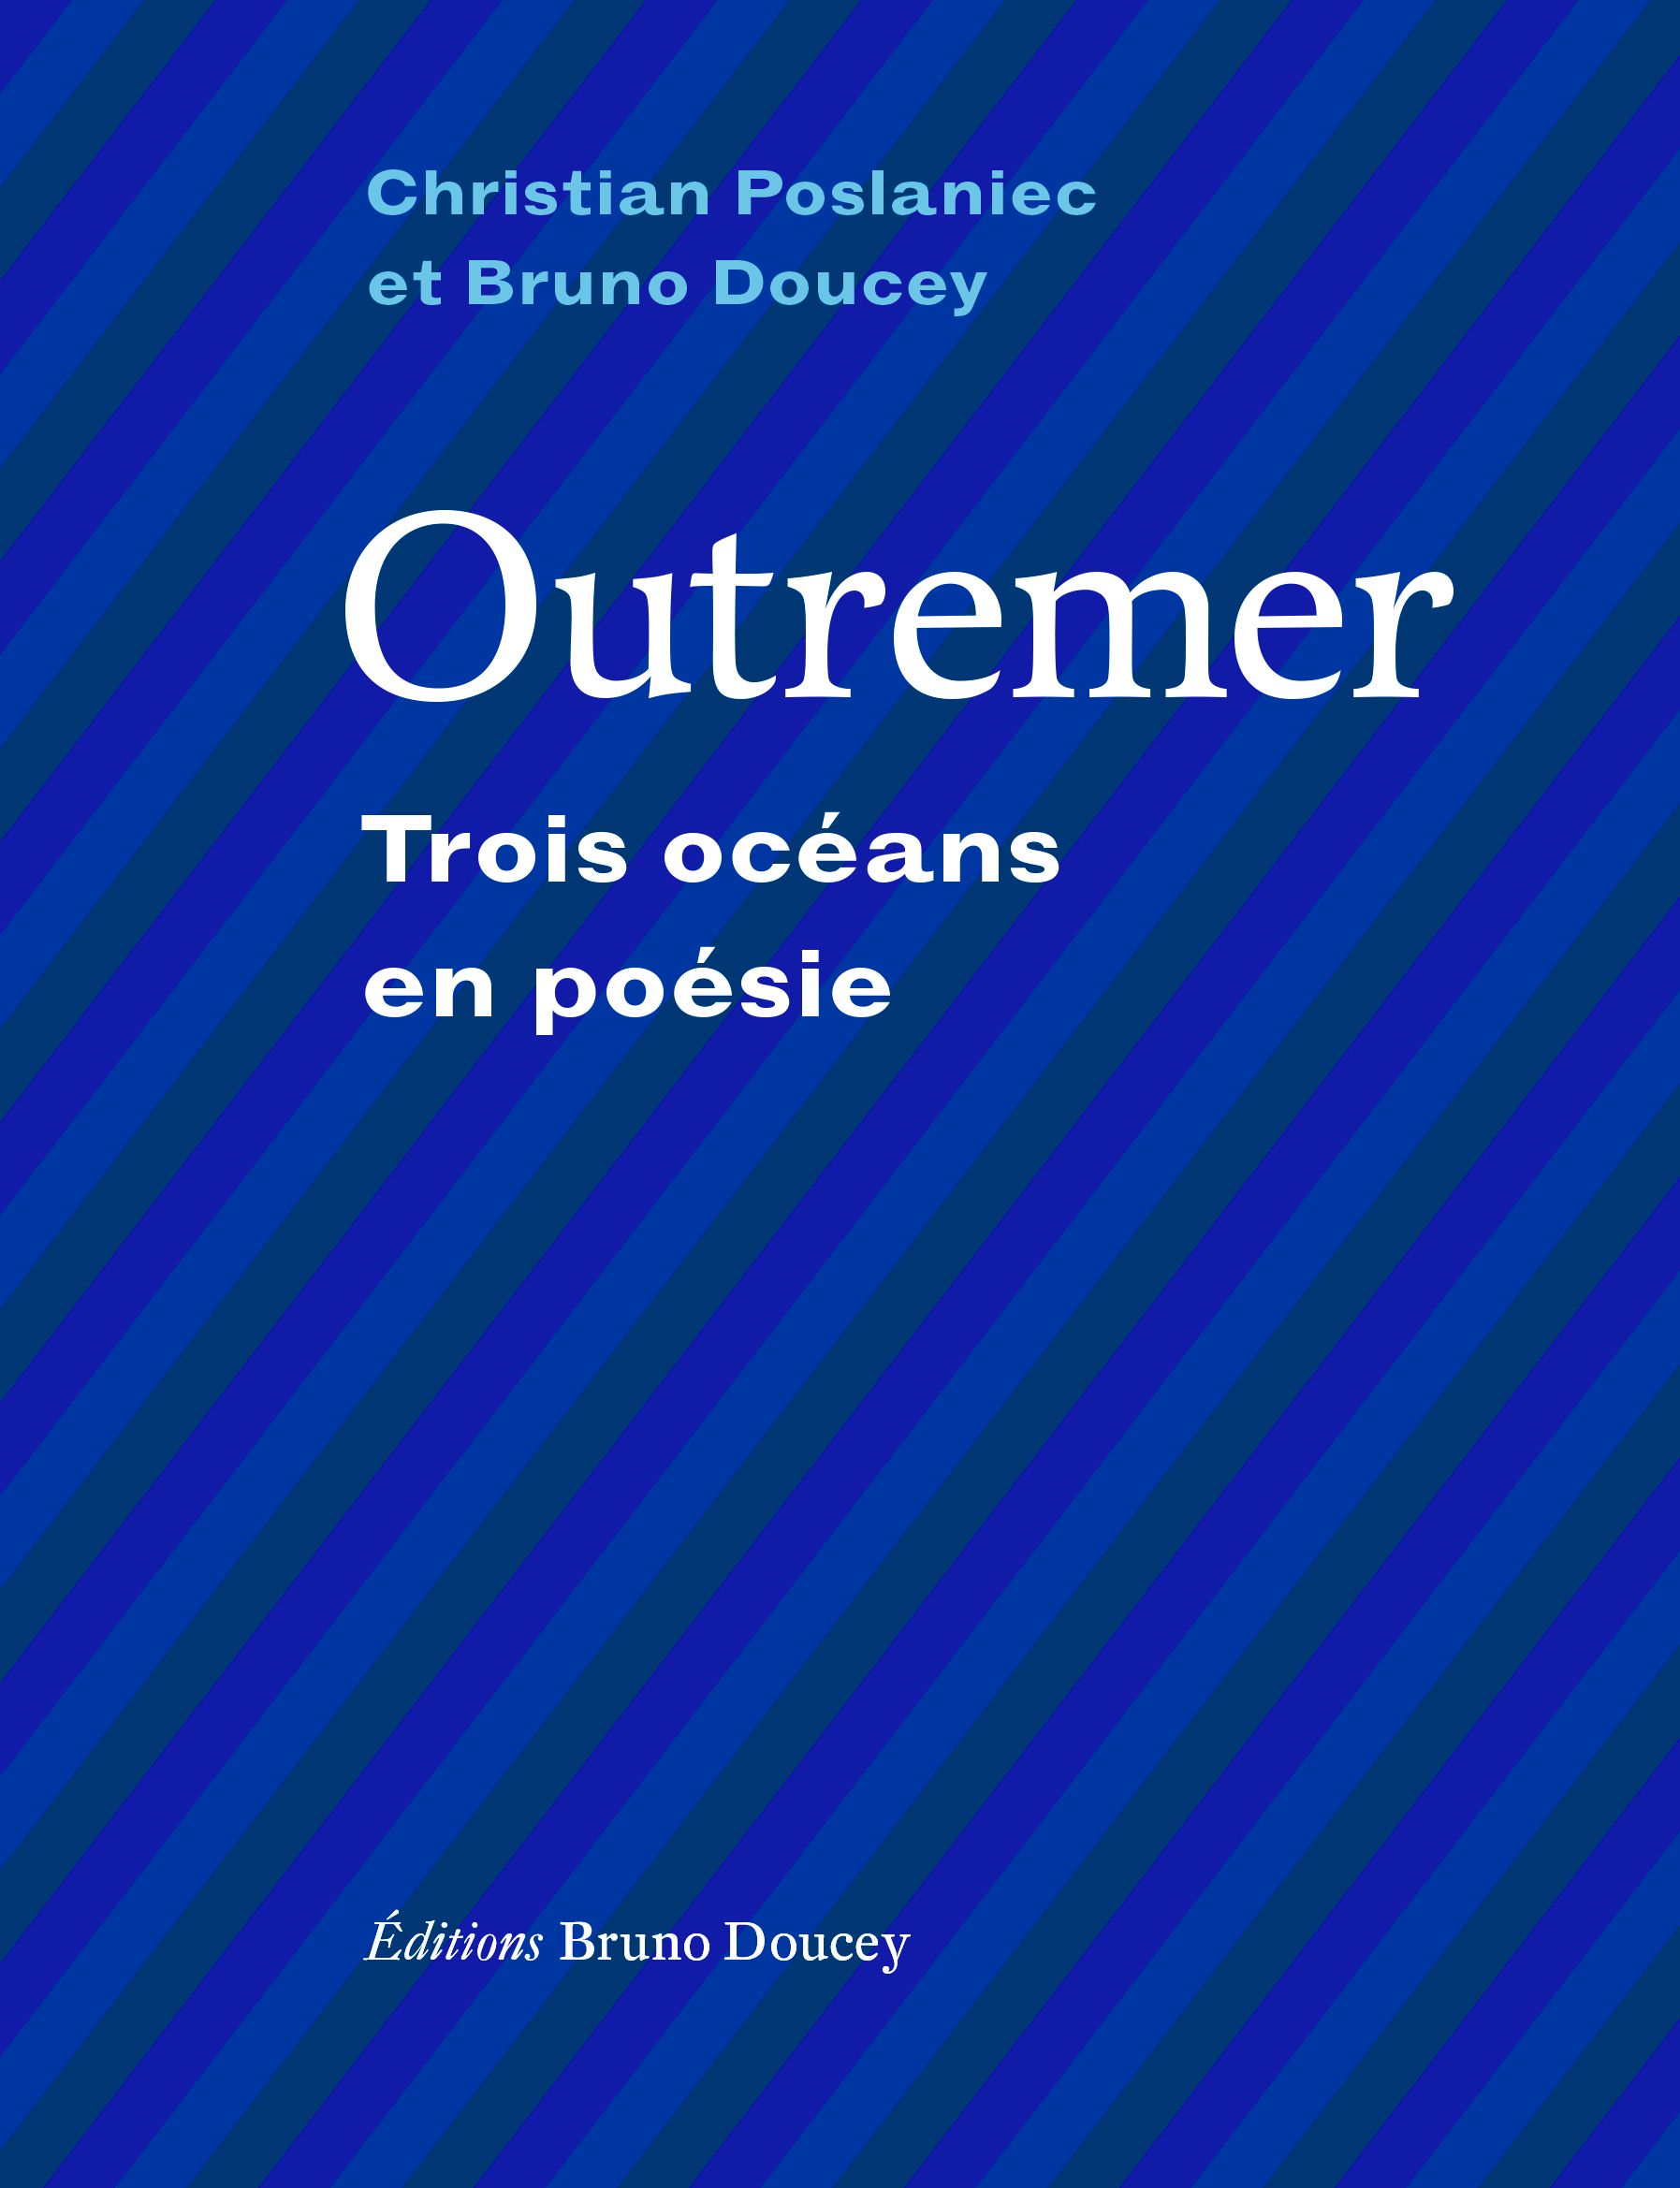 Couverture du livre 'Outremer, Trois océans en poésie'